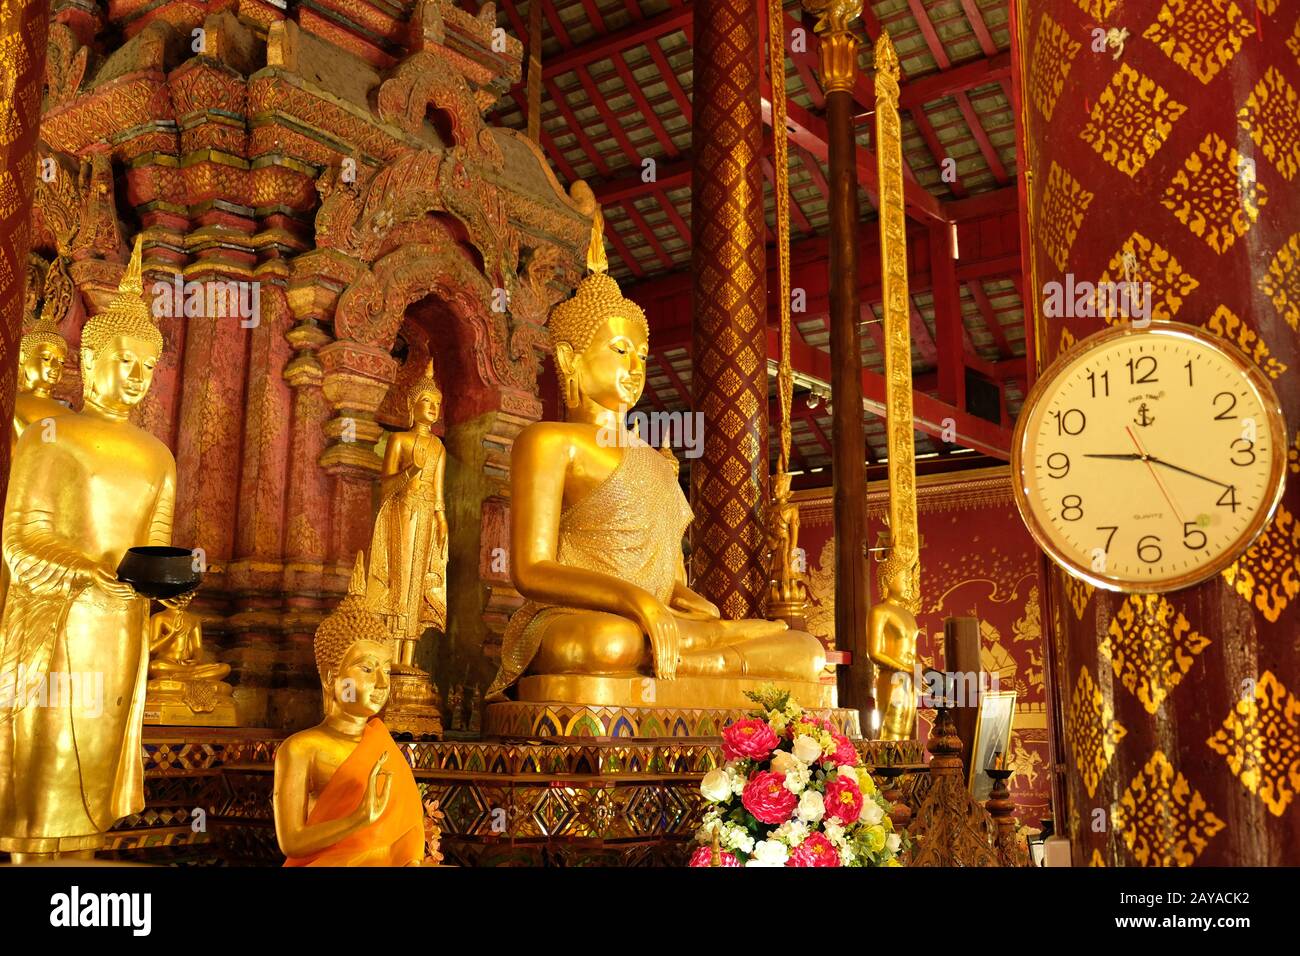 Chiang mai Thailandia - Tempio Chiang Man sala di meditazione con statue Buddha d'oro Foto Stock